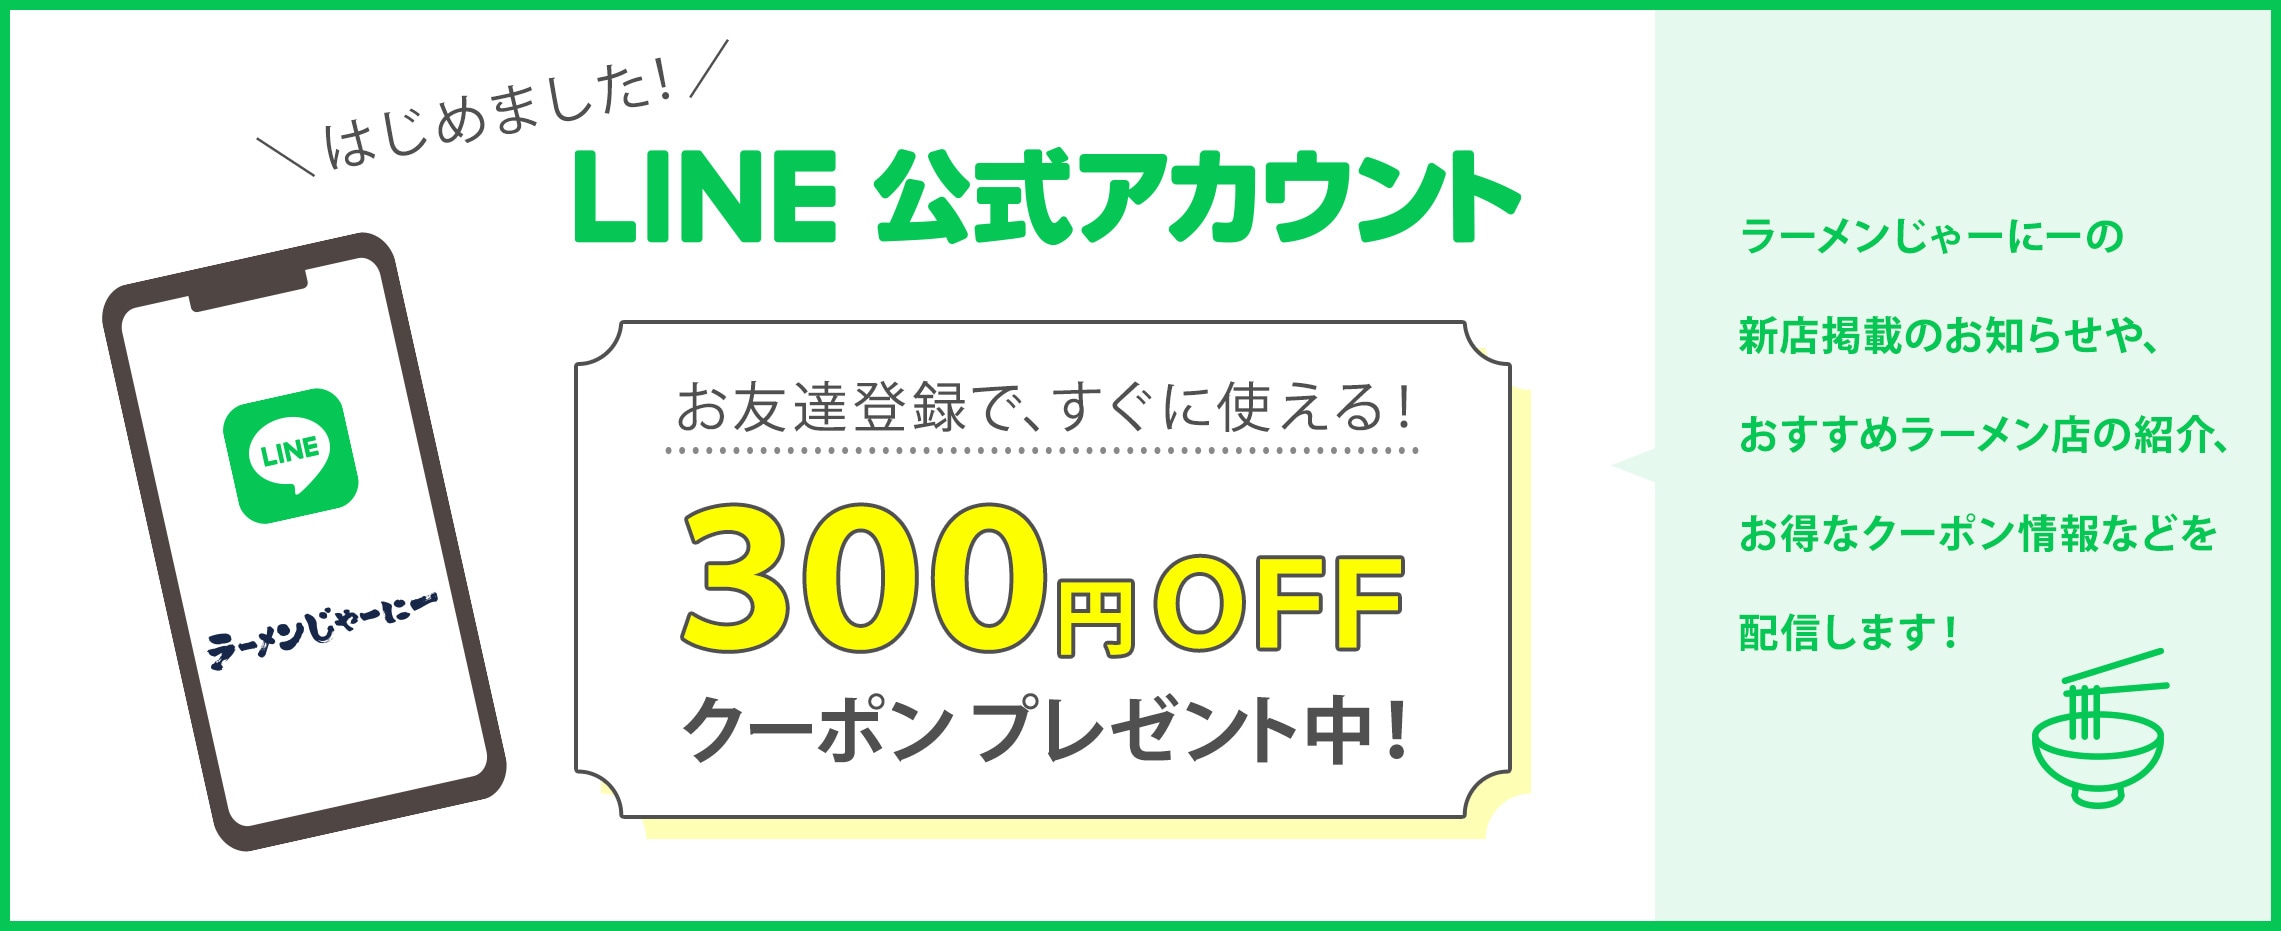 公式LINEお友達登録で300円クーポン